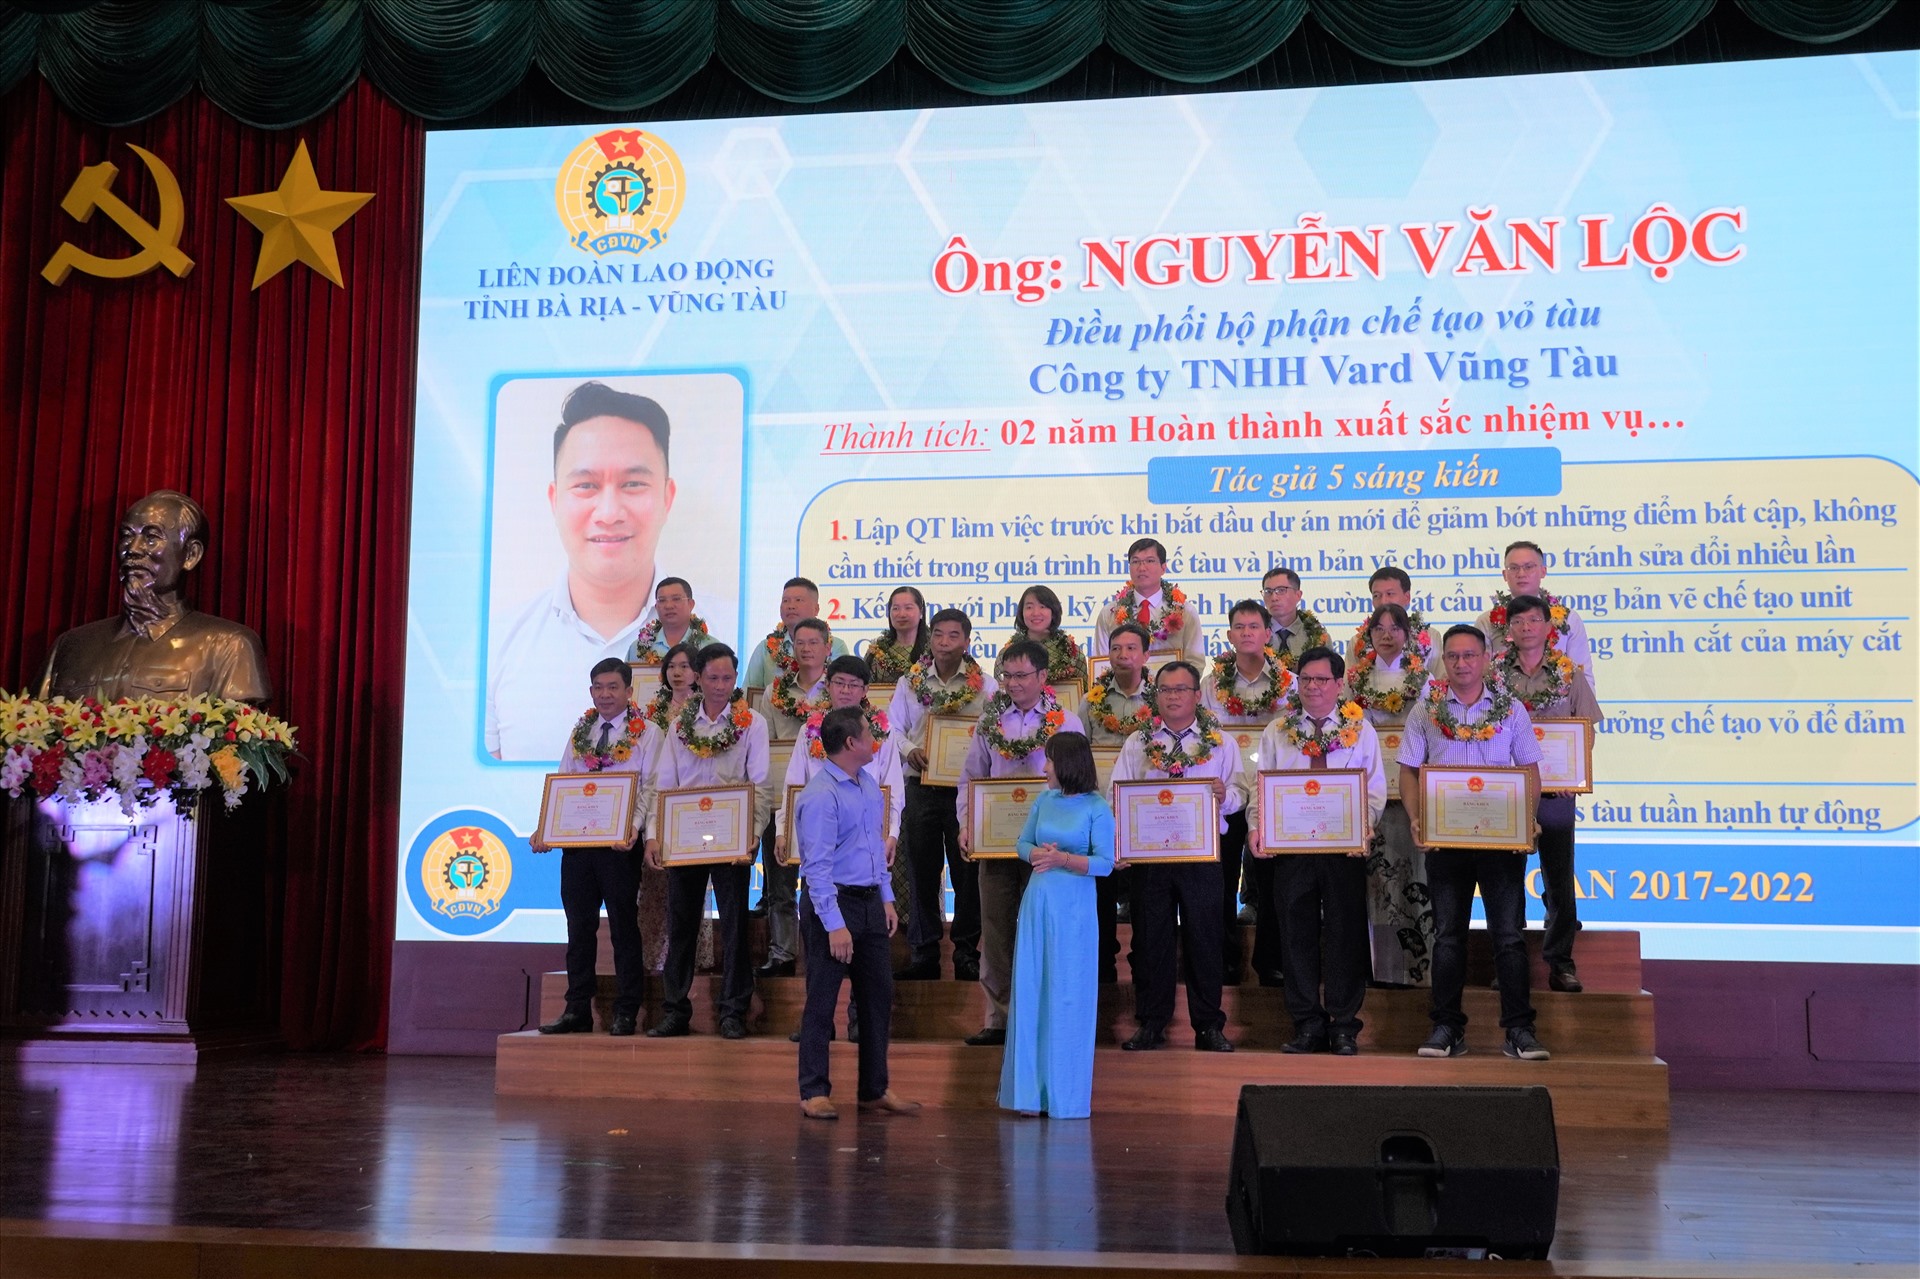 Kĩ sư Nguyễn Văn Lộc nhận bằng khen do UBND tỉnh trao tặng vì có thành tích xuất sắc trong phong trào “Lao động giỏi, Lao động sáng tạo 2017-2022“. Ảnh: Thành An